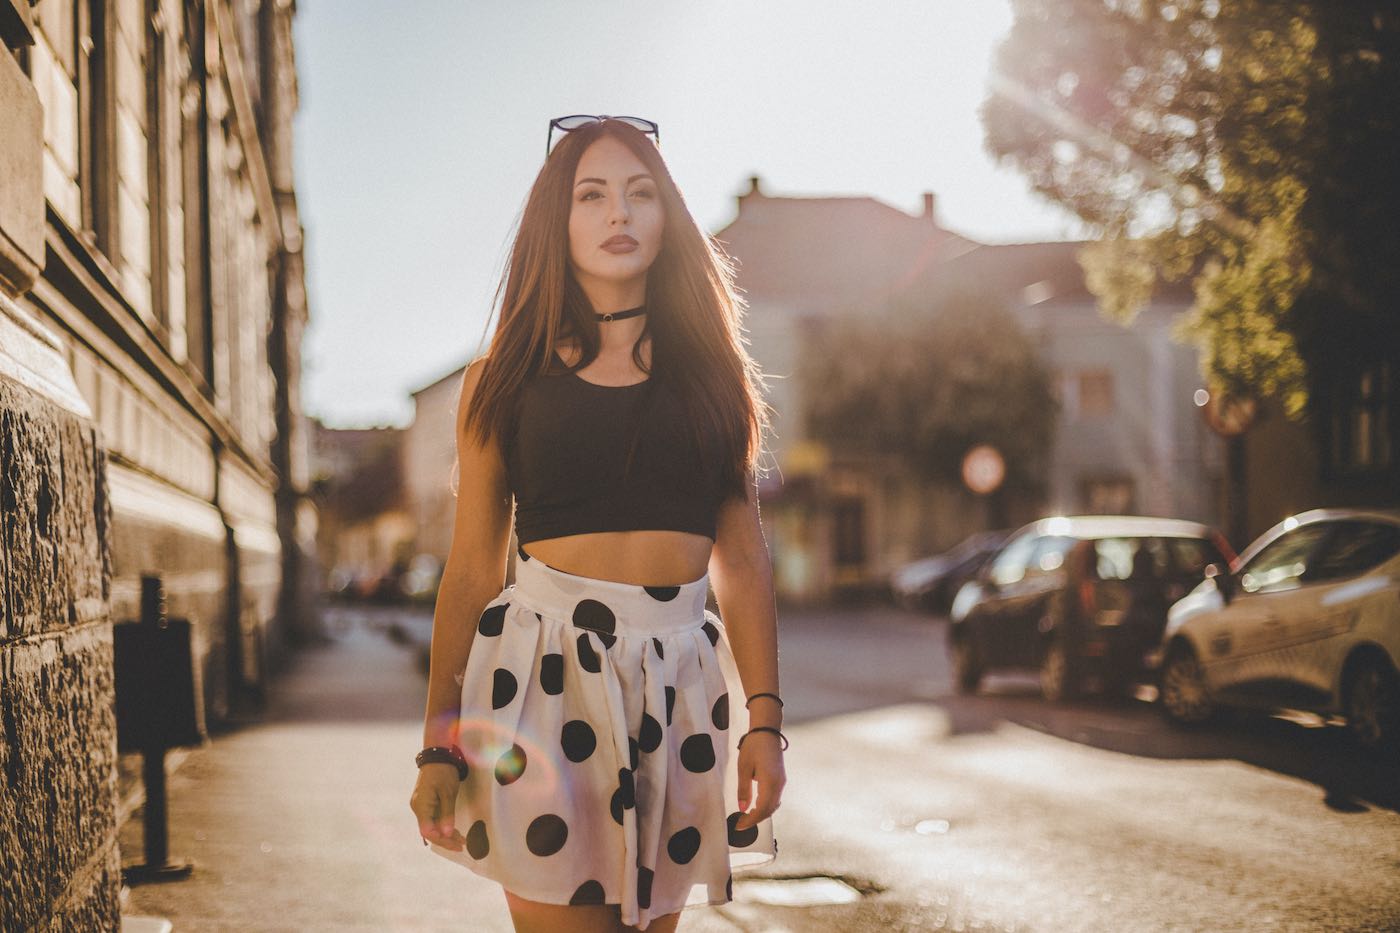 Mujer joven lleva puesto un Crop-tops y disfruta de un día soleado de verano en la ciudad.